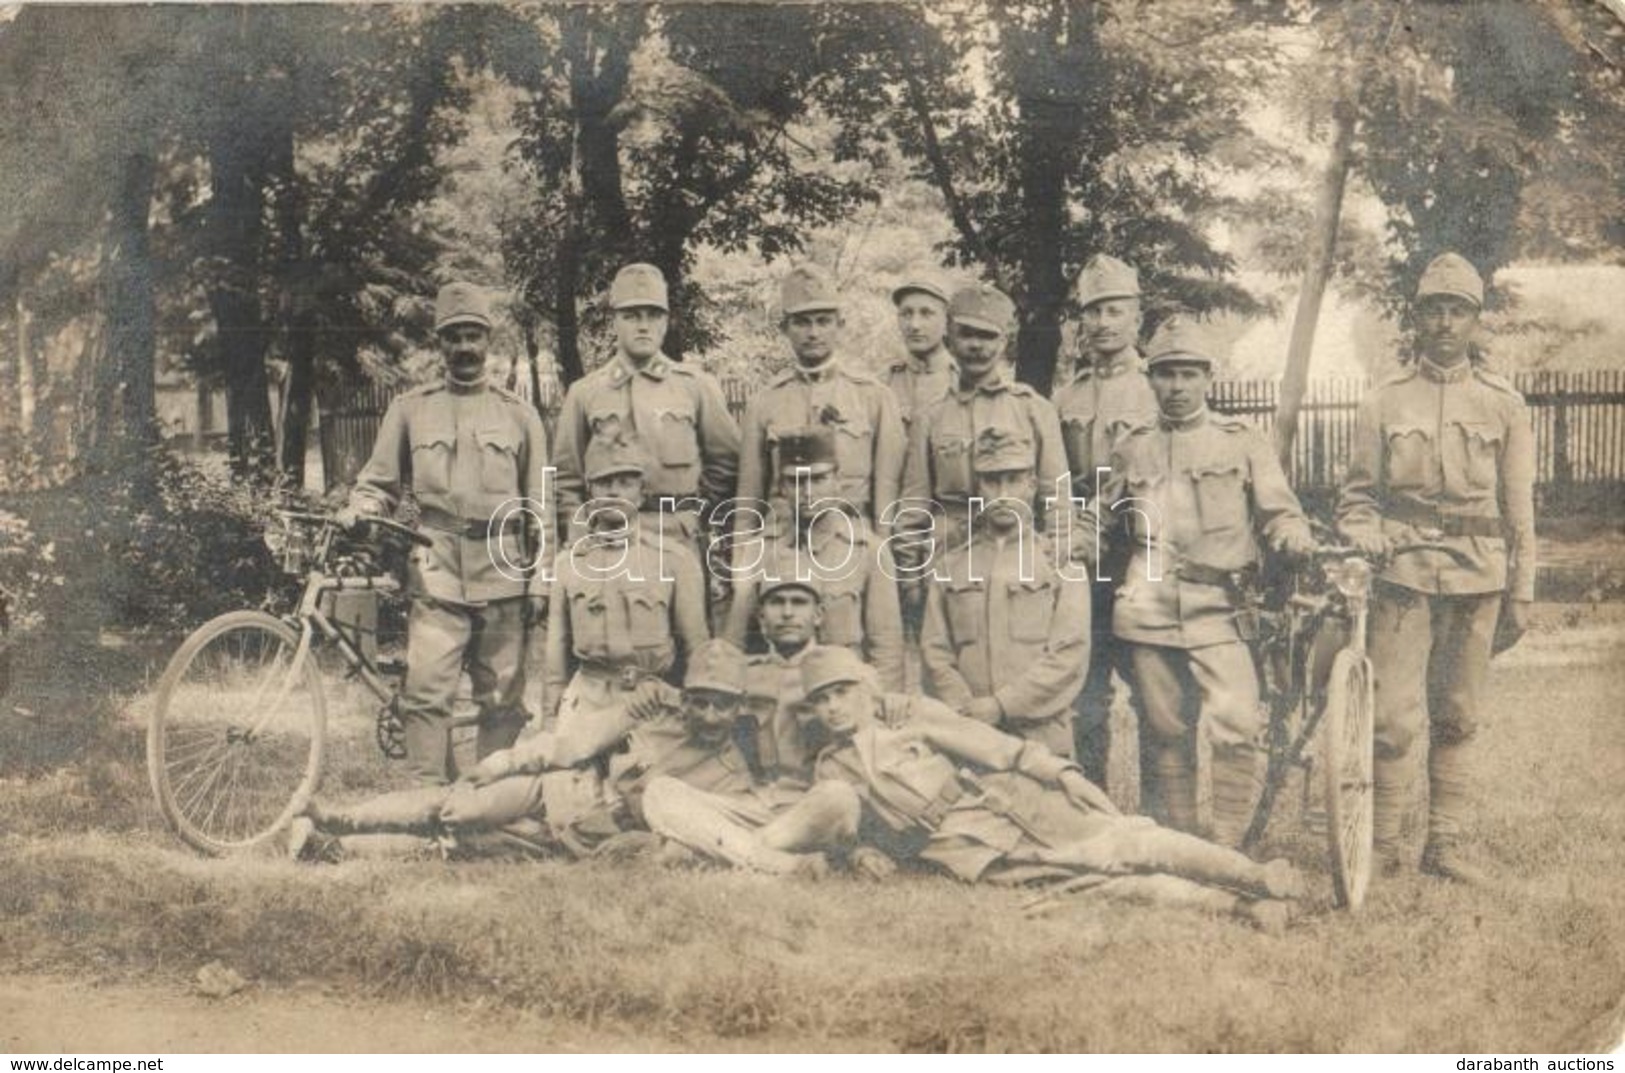 ** T2/T3 Első Világháborús Osztrák-magyar Kerékpáros Katonák / WWI K.u.k. Military, Soldiers With Bicycles. Group Photo  - Non Classificati